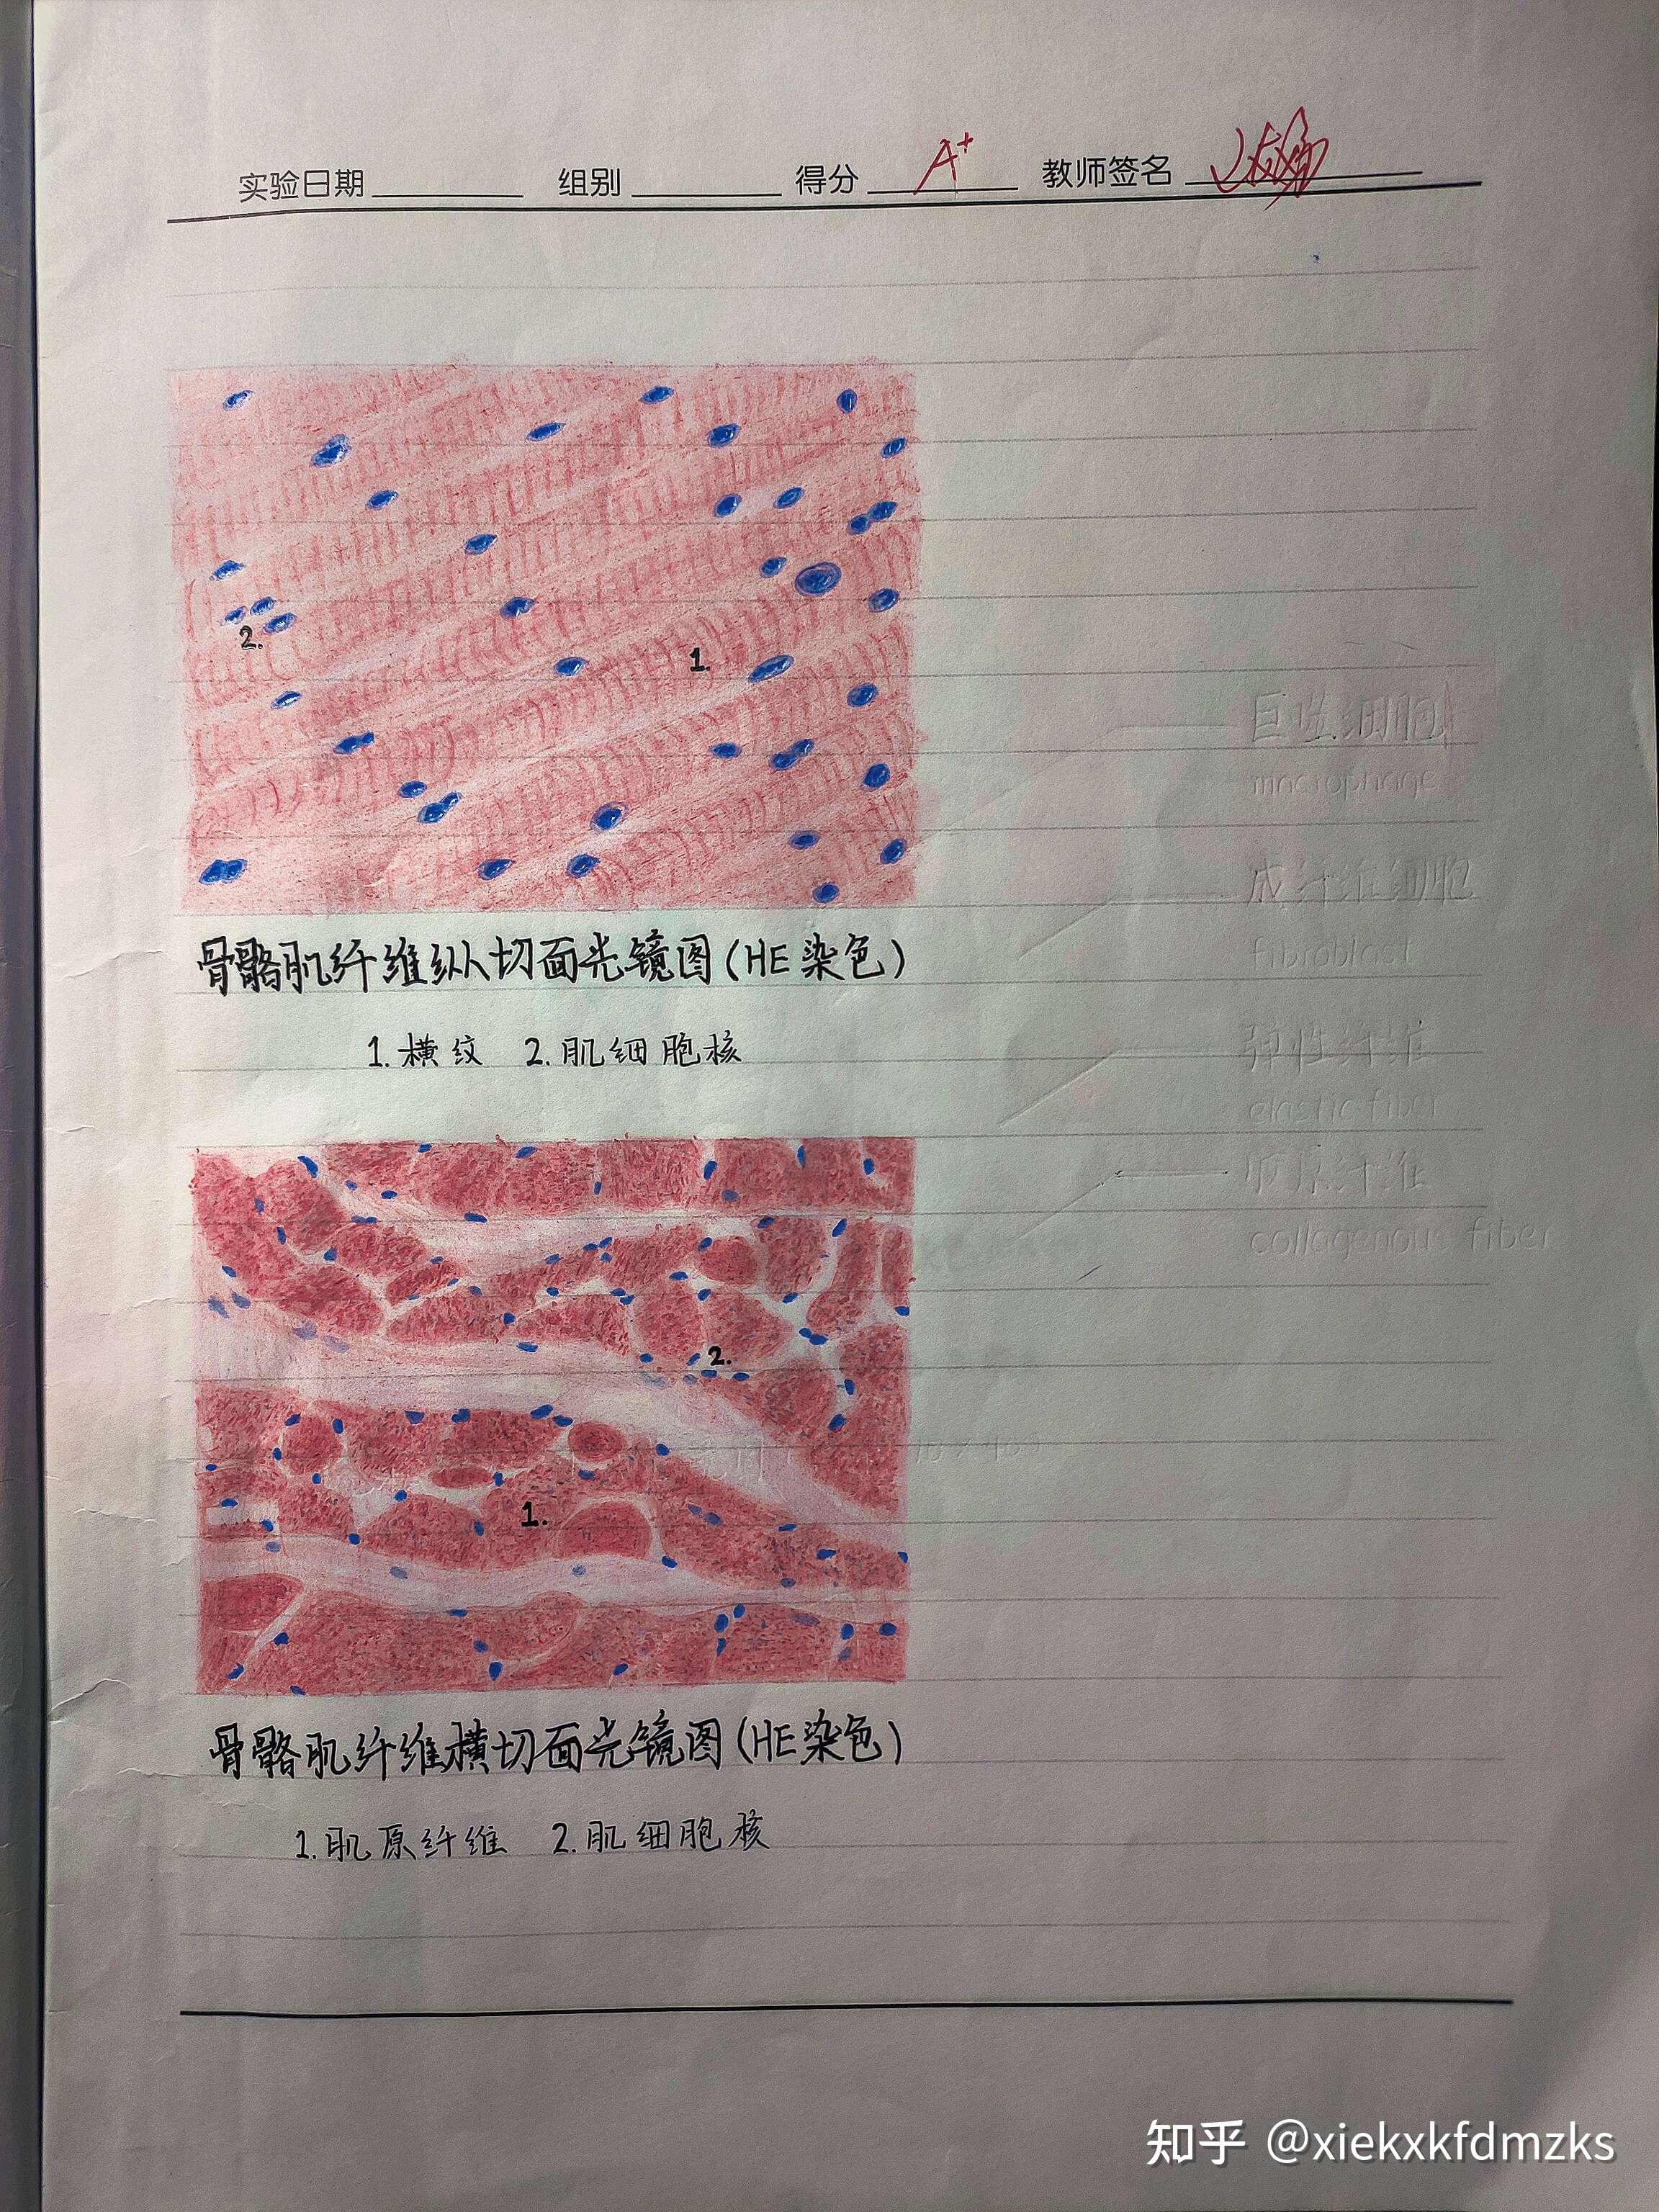 组胚红蓝铅笔手绘图 